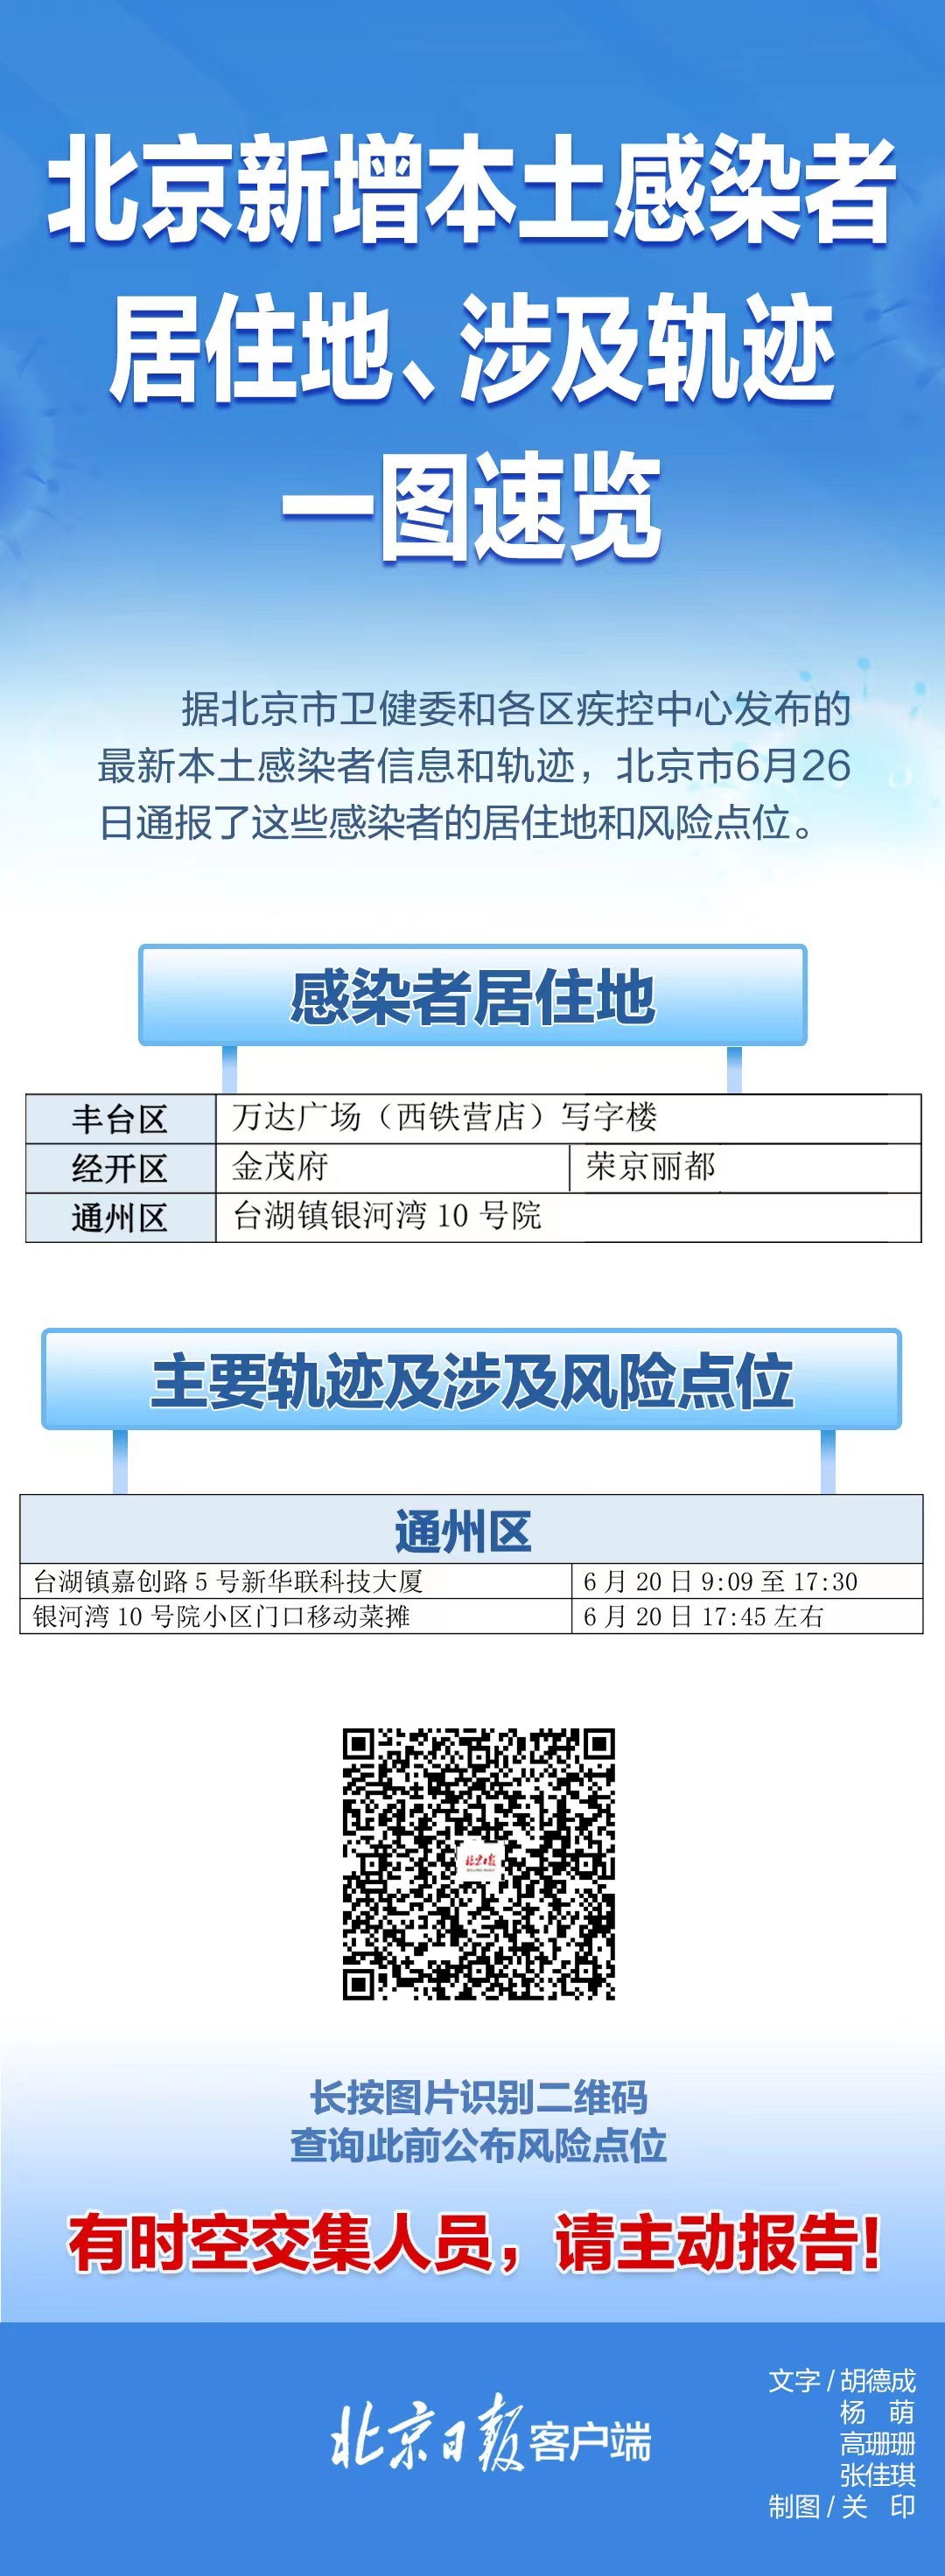 速自查!北京26日通报感染者居住地、工作地、风险点一图速览